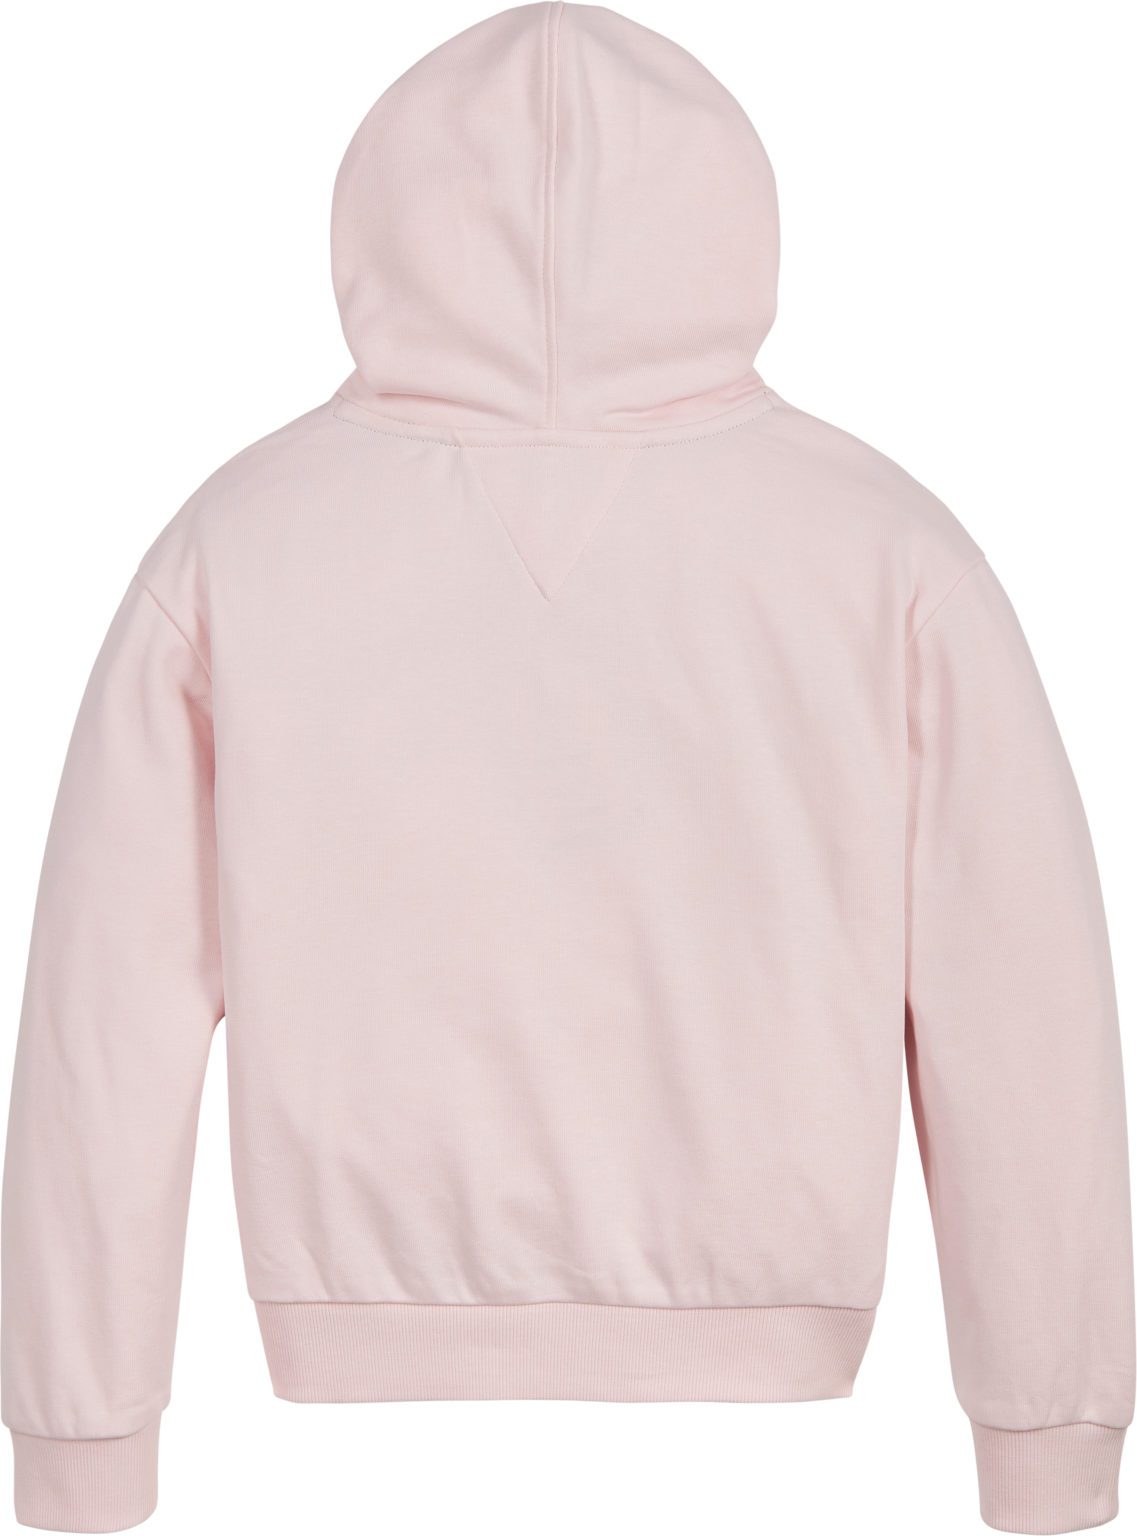 Tommy Hilfiger Pink Hoodie 5891 - Little Angels Childrenswear